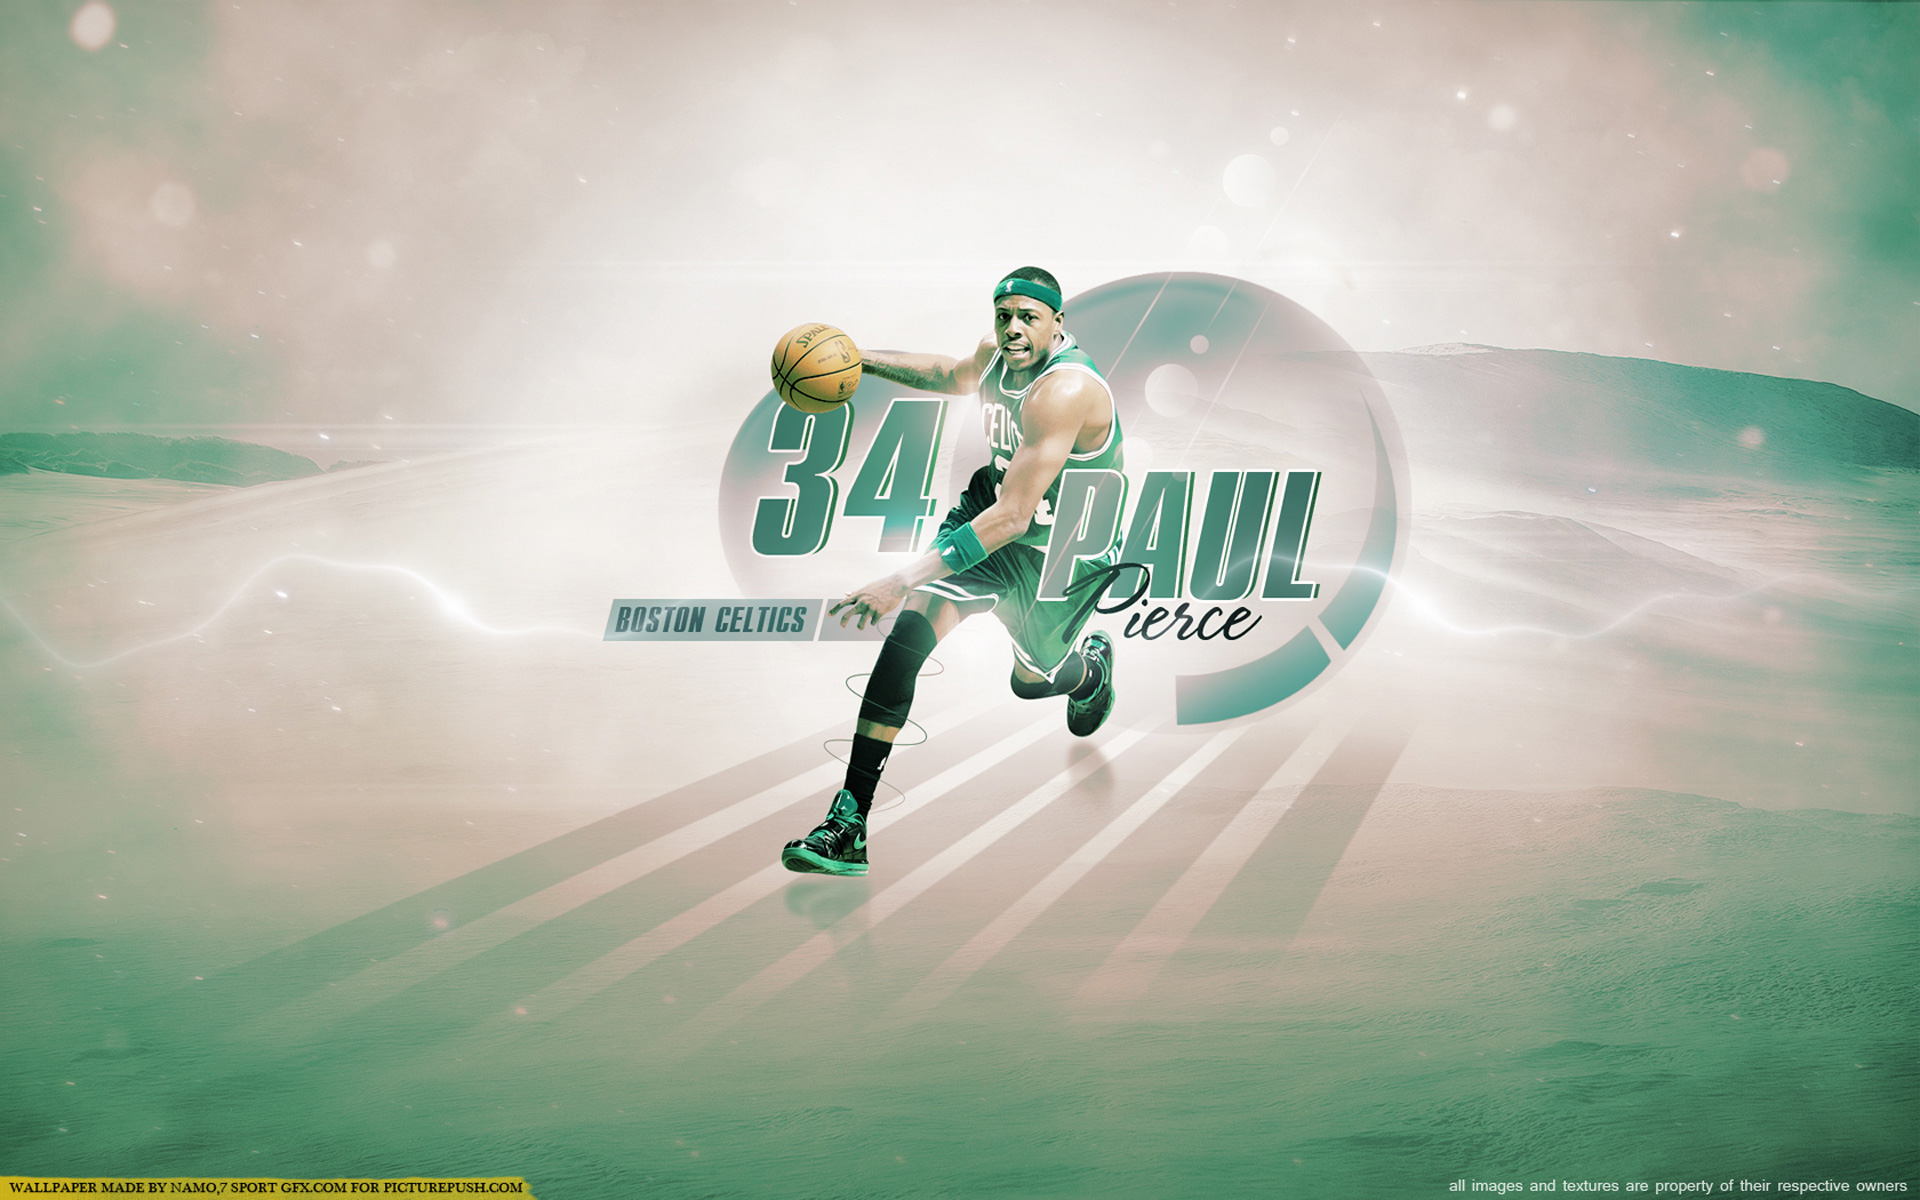 Paul Pierce Celtics 2013 1920×1200 Wallpaper | Basketball ...